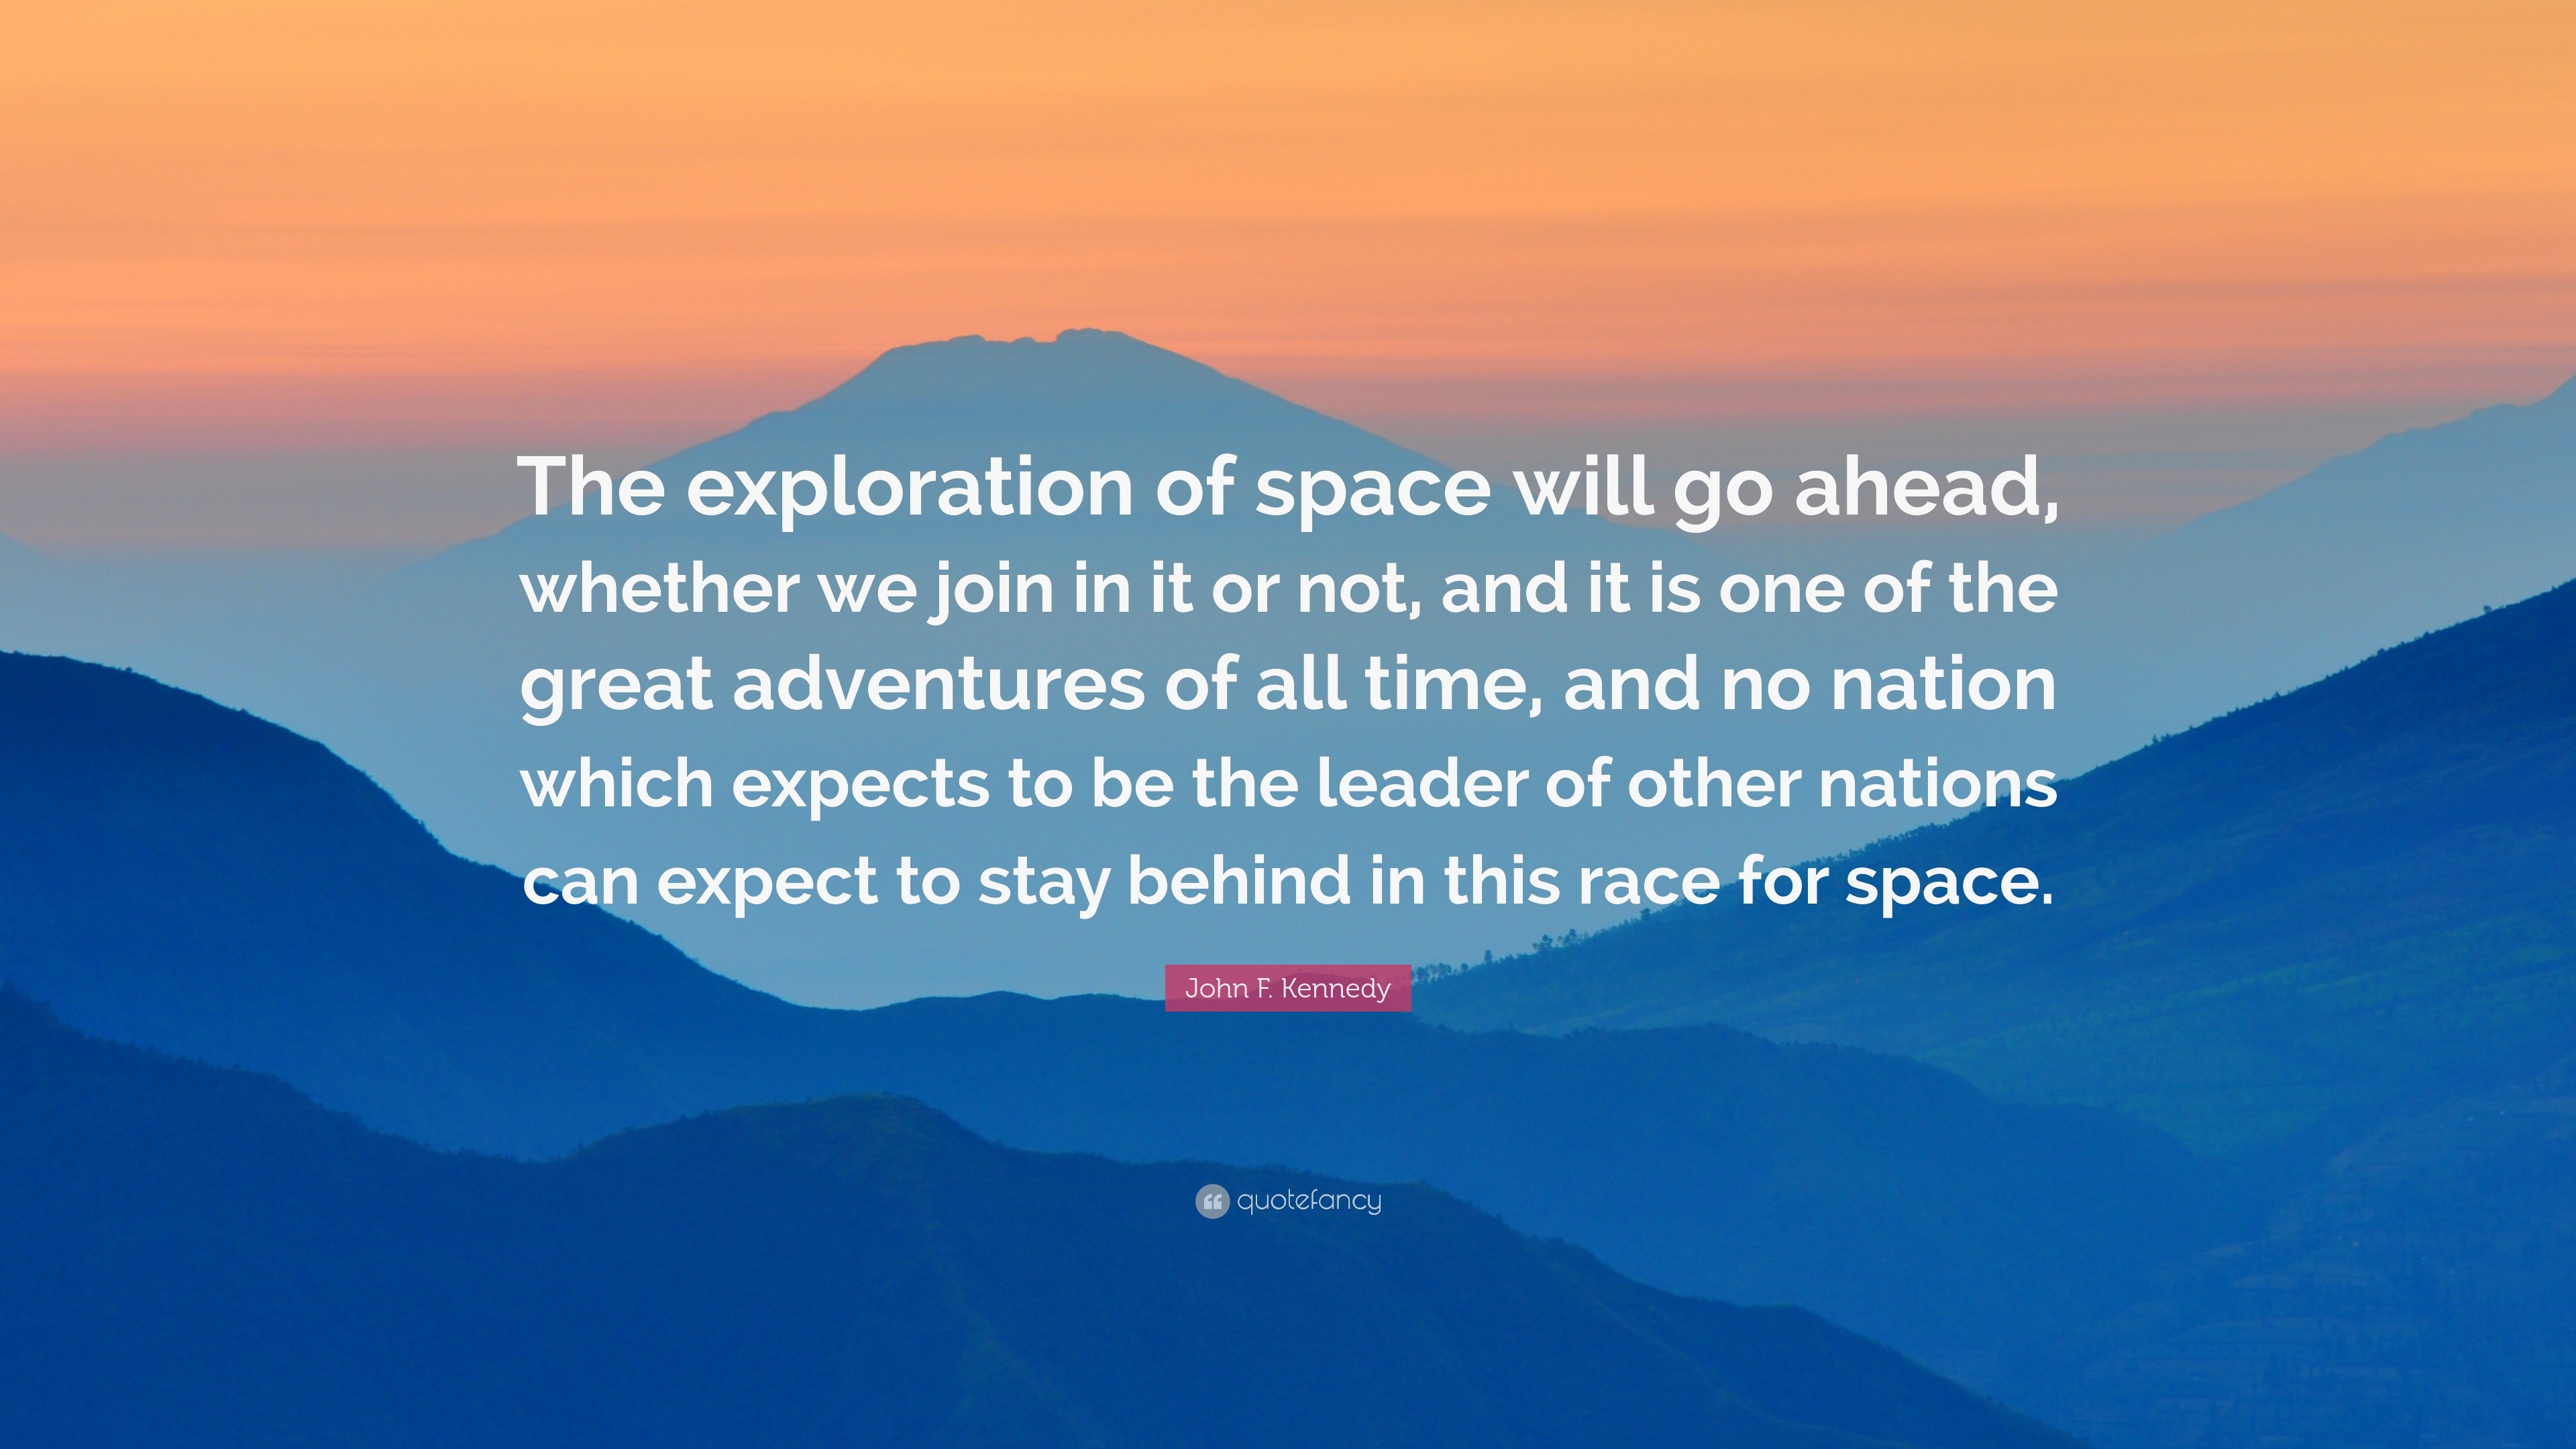 famous quote space exploration